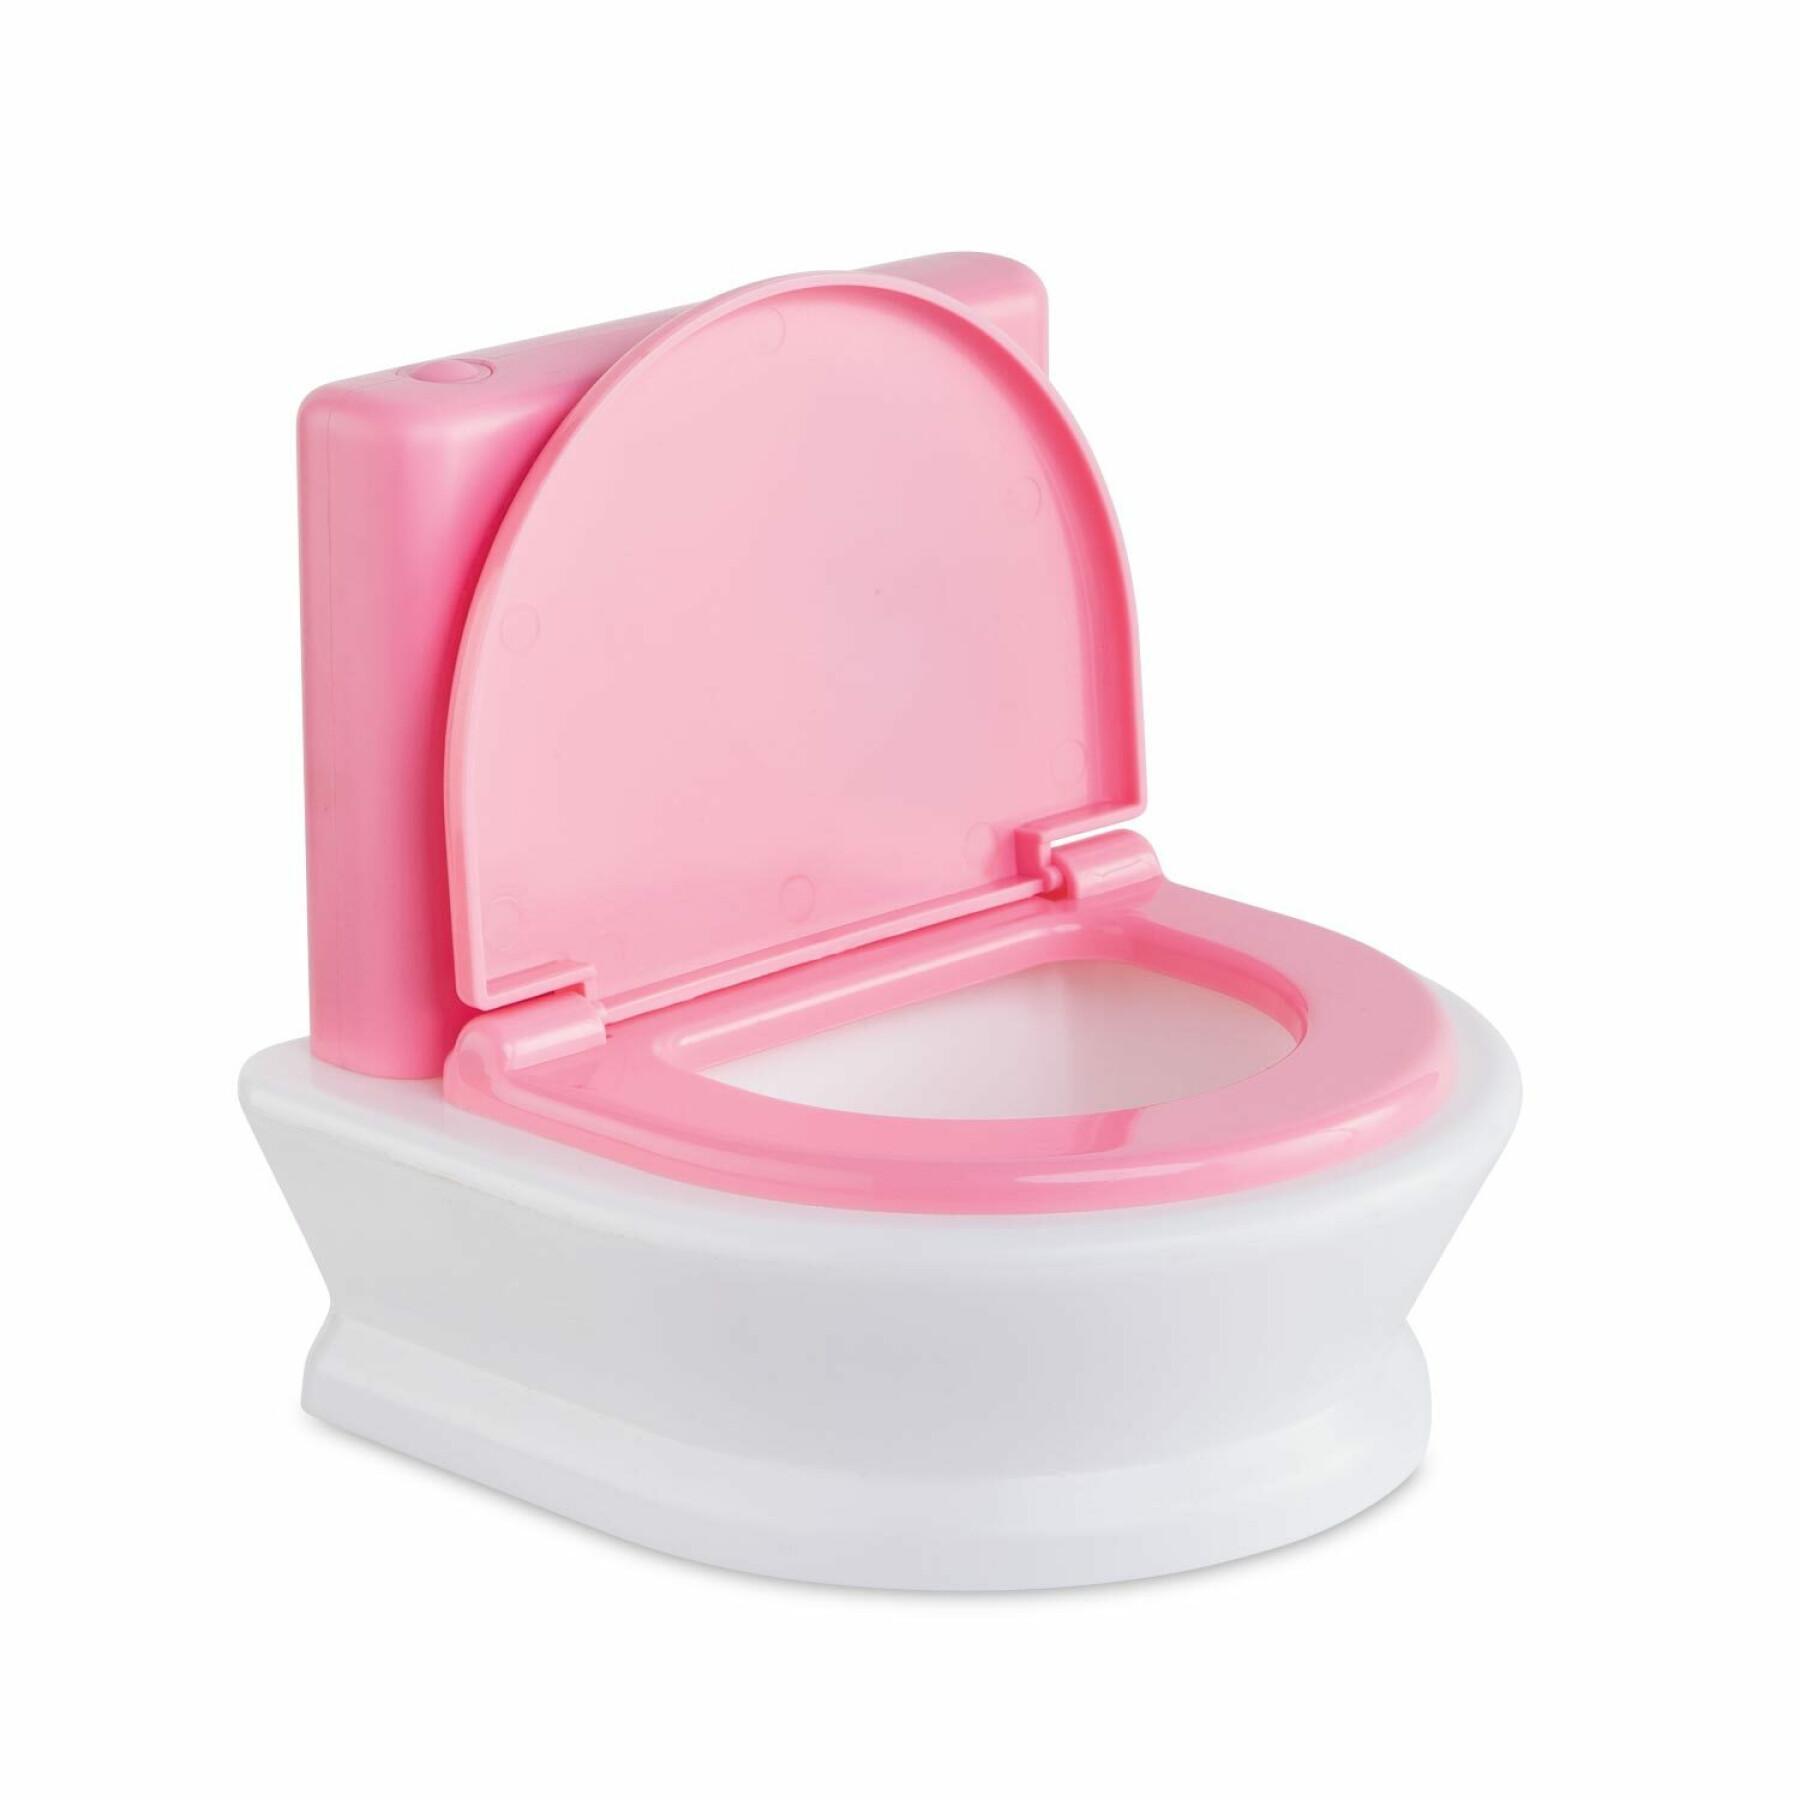 Interaktiv toalett för barn Corolle